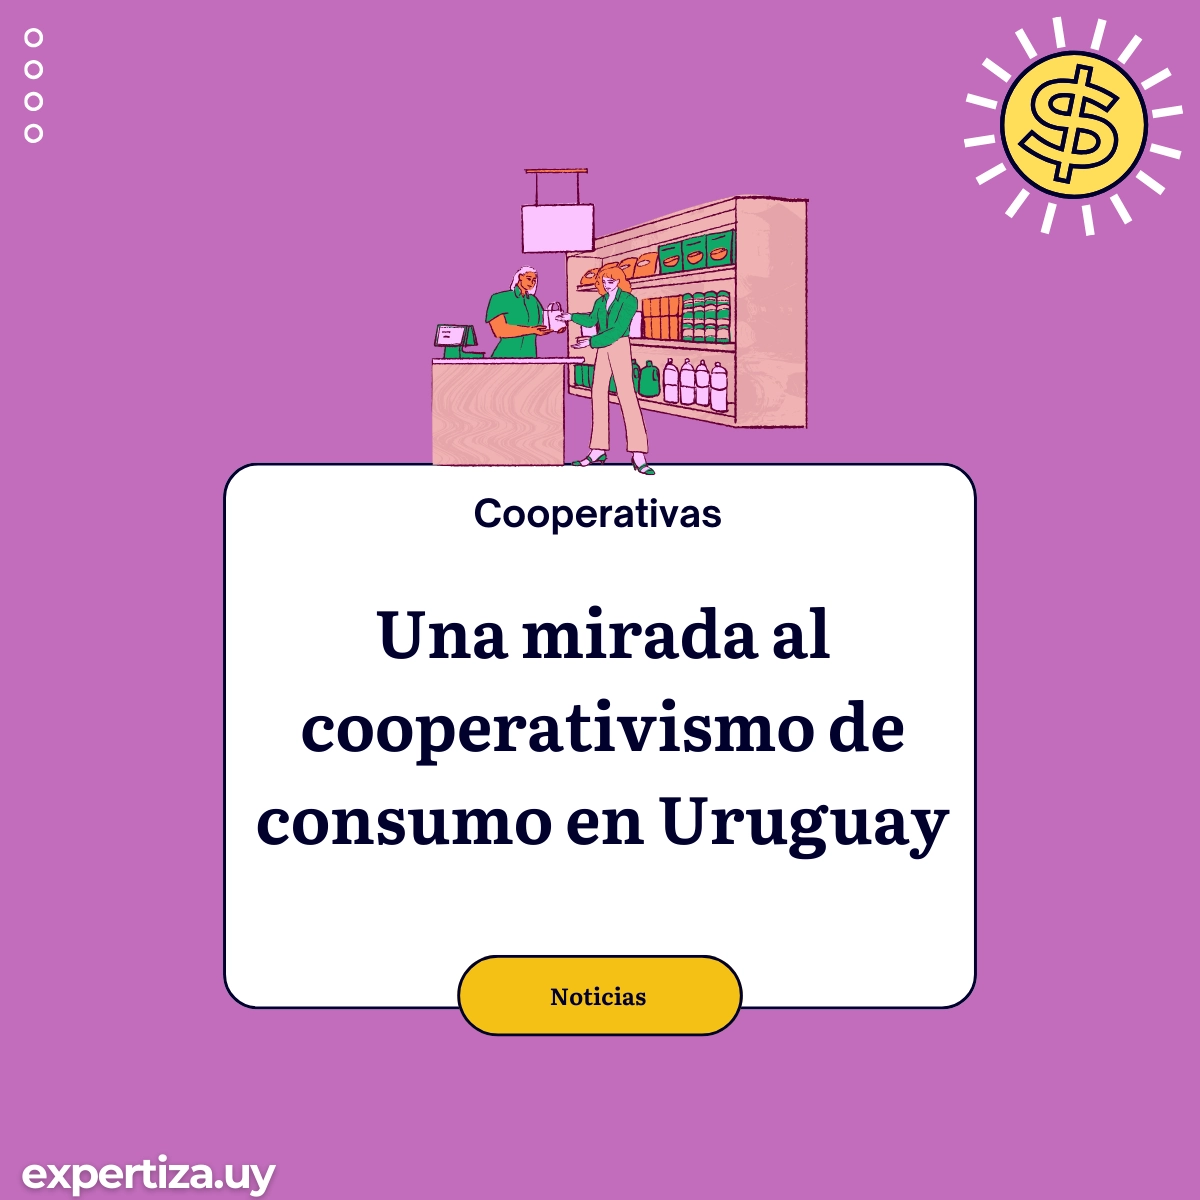 Una mirada al cooperativismo de consumo en Uruguay.